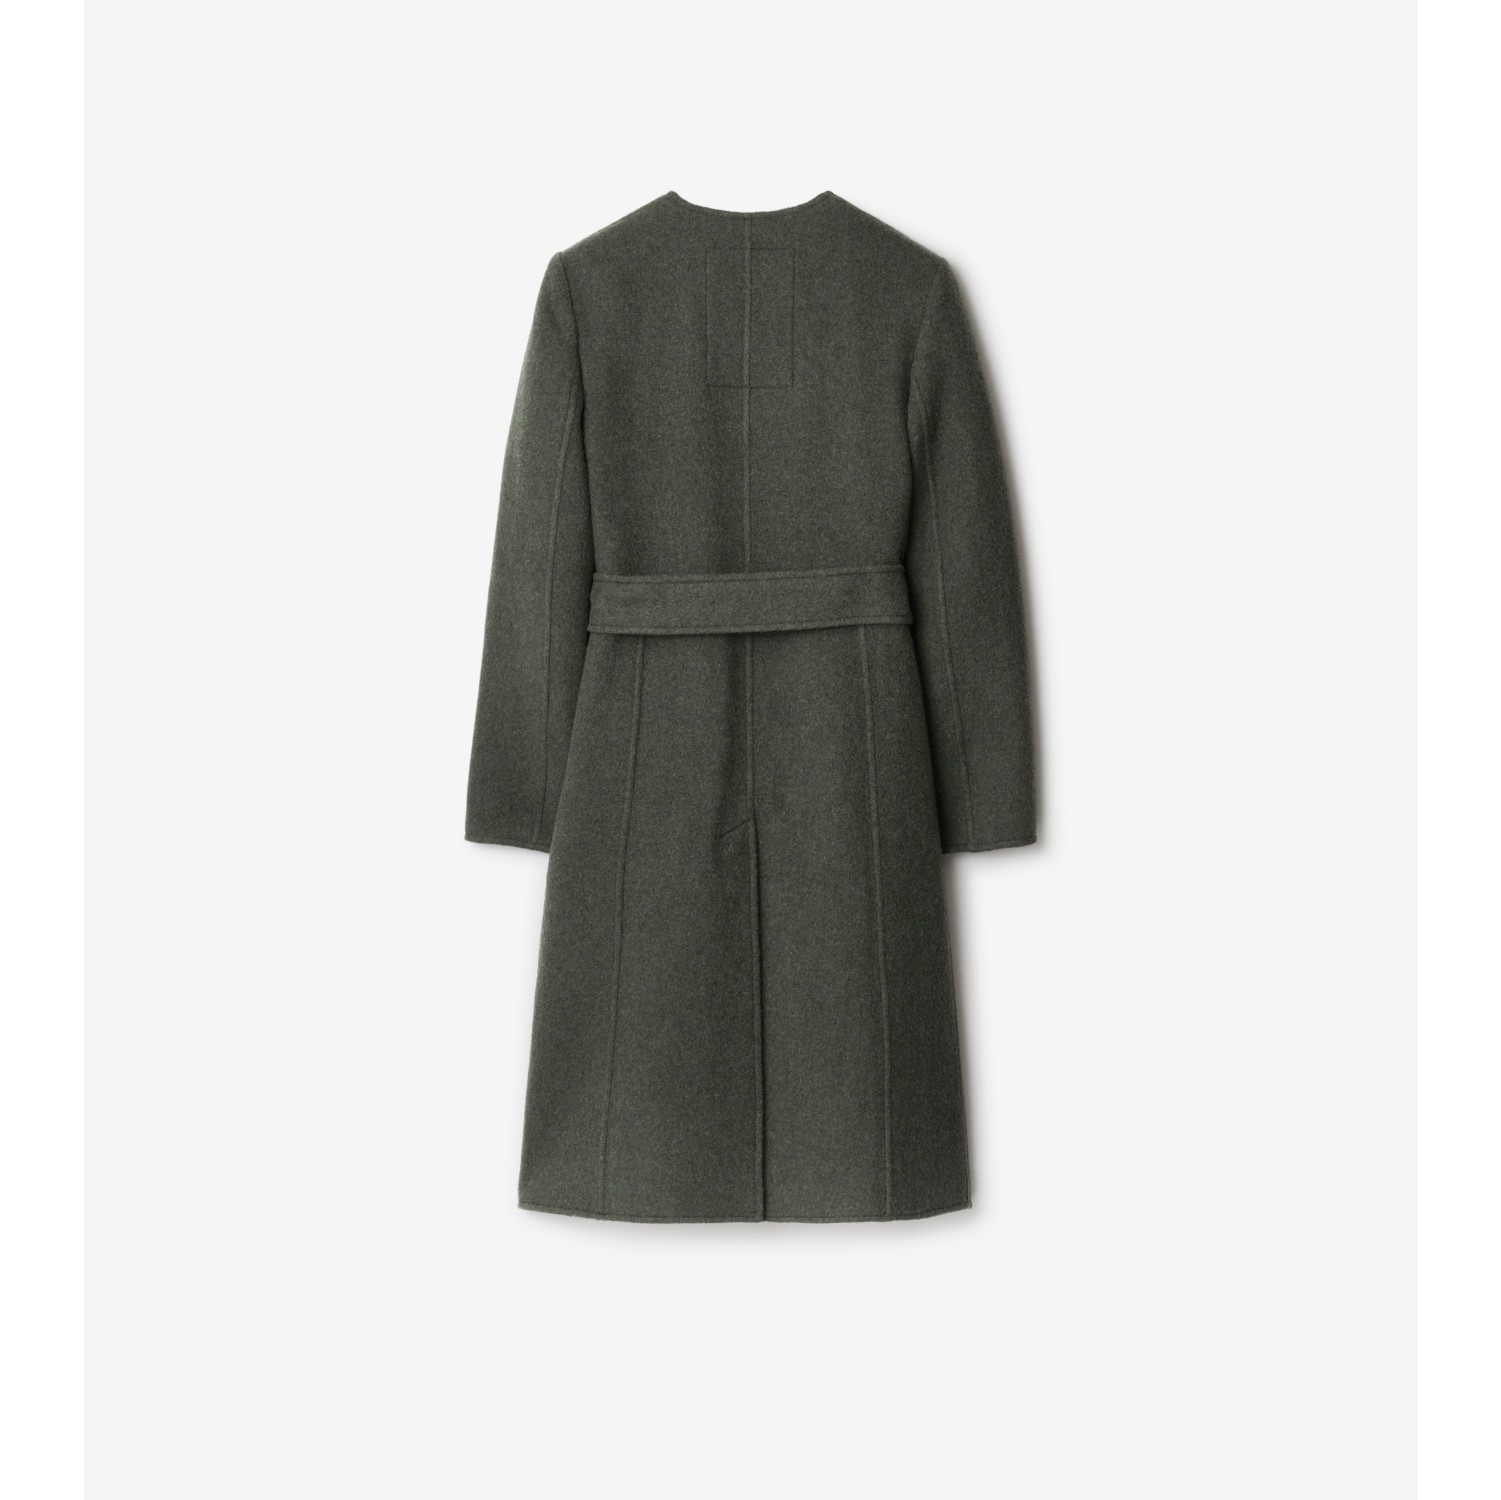 Short Olive Belted Wrap Wool Coat